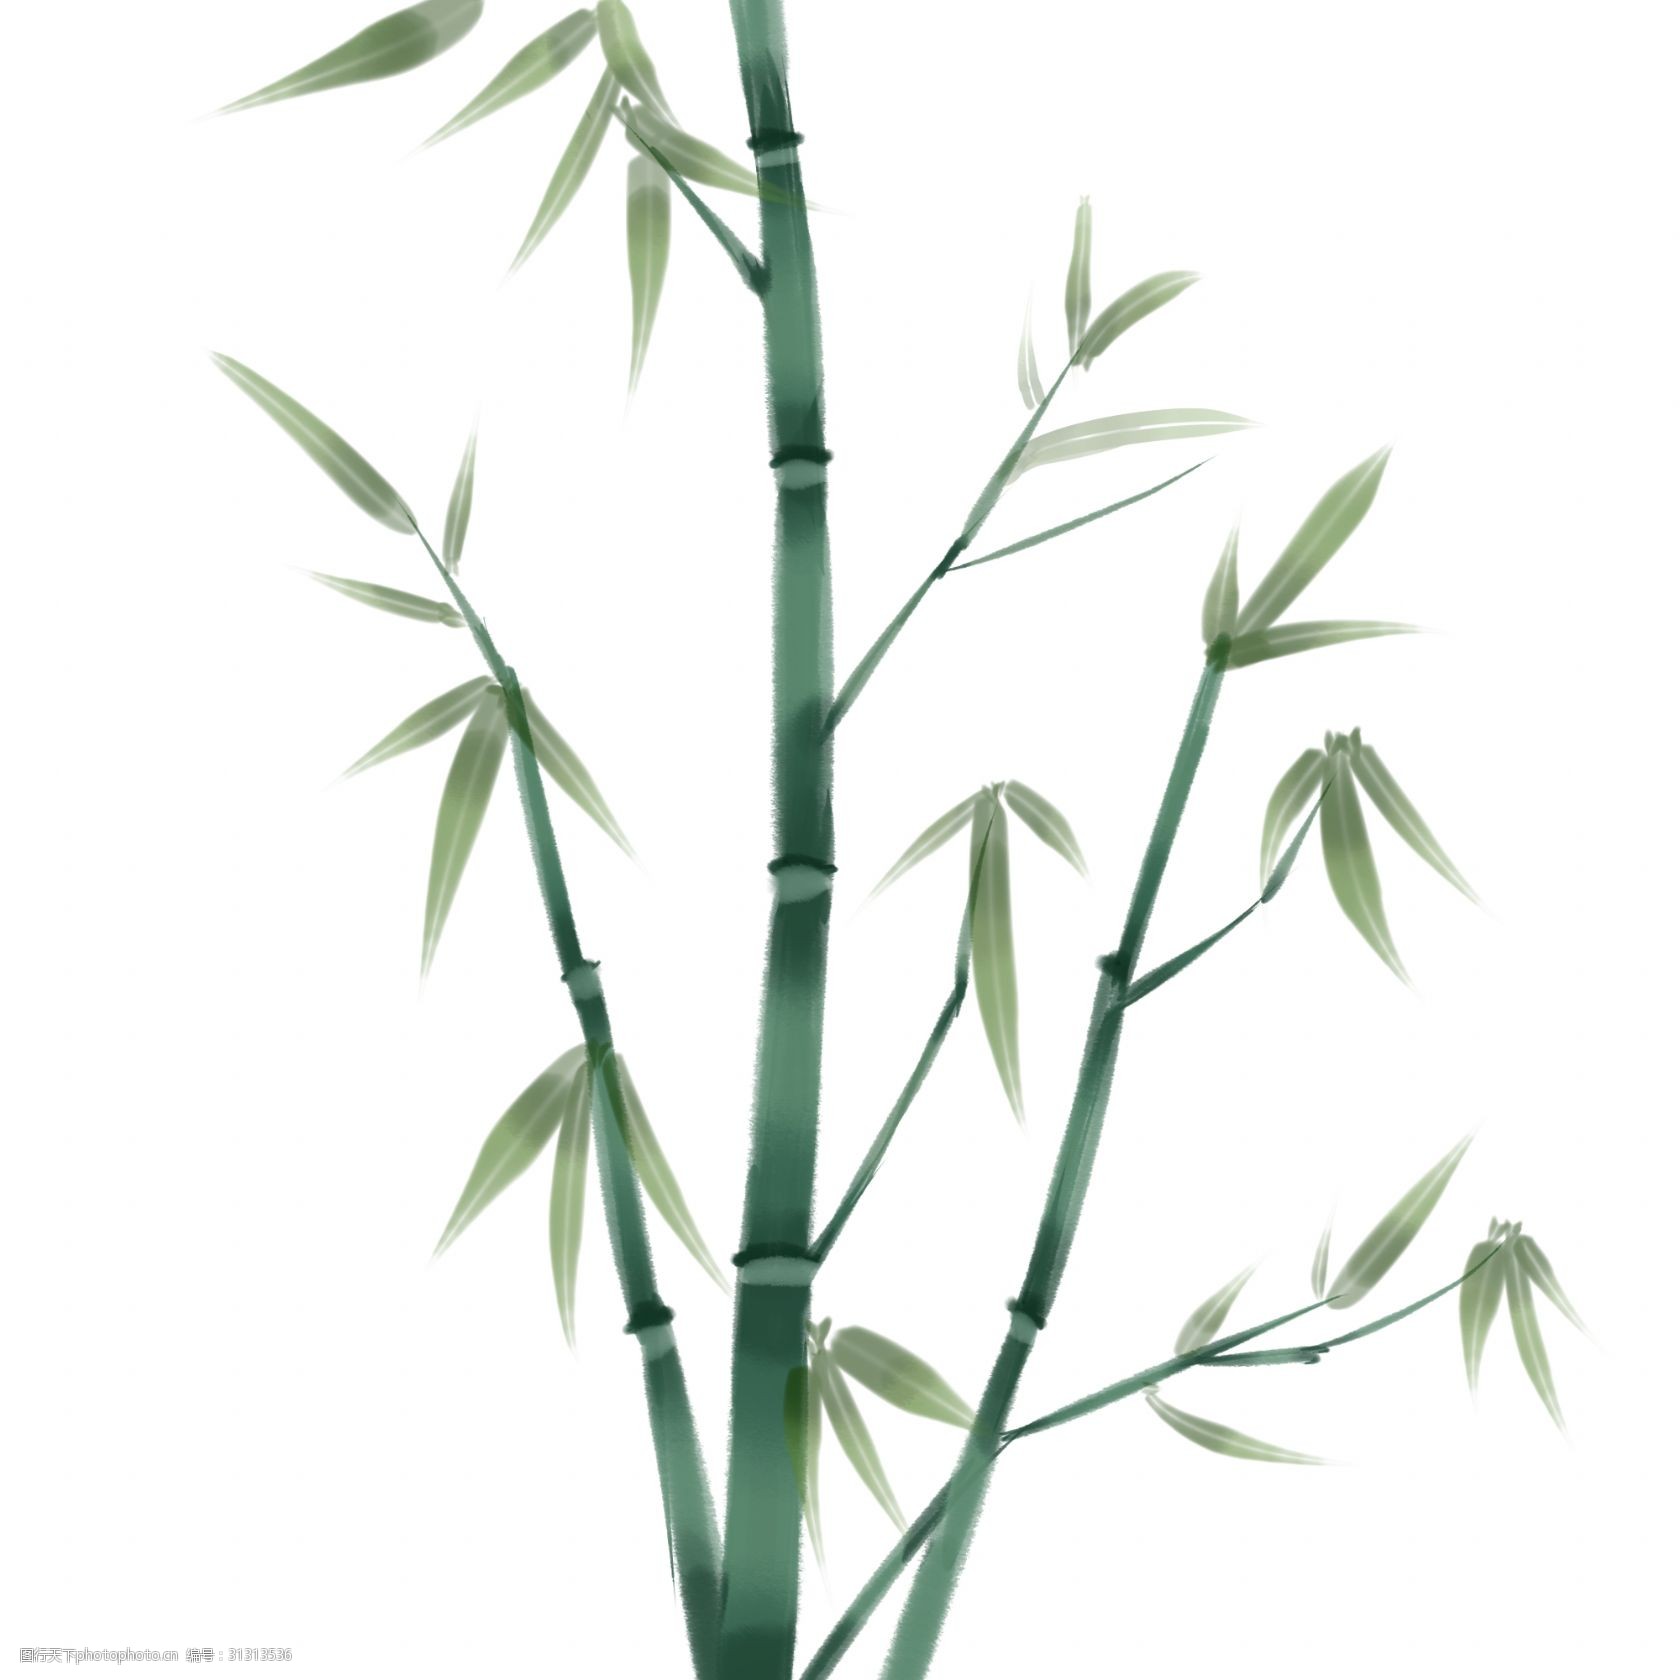 关键词:水墨绿色竹子插画 竹叶 叶子 中国风 水墨画 植物 水墨竹子